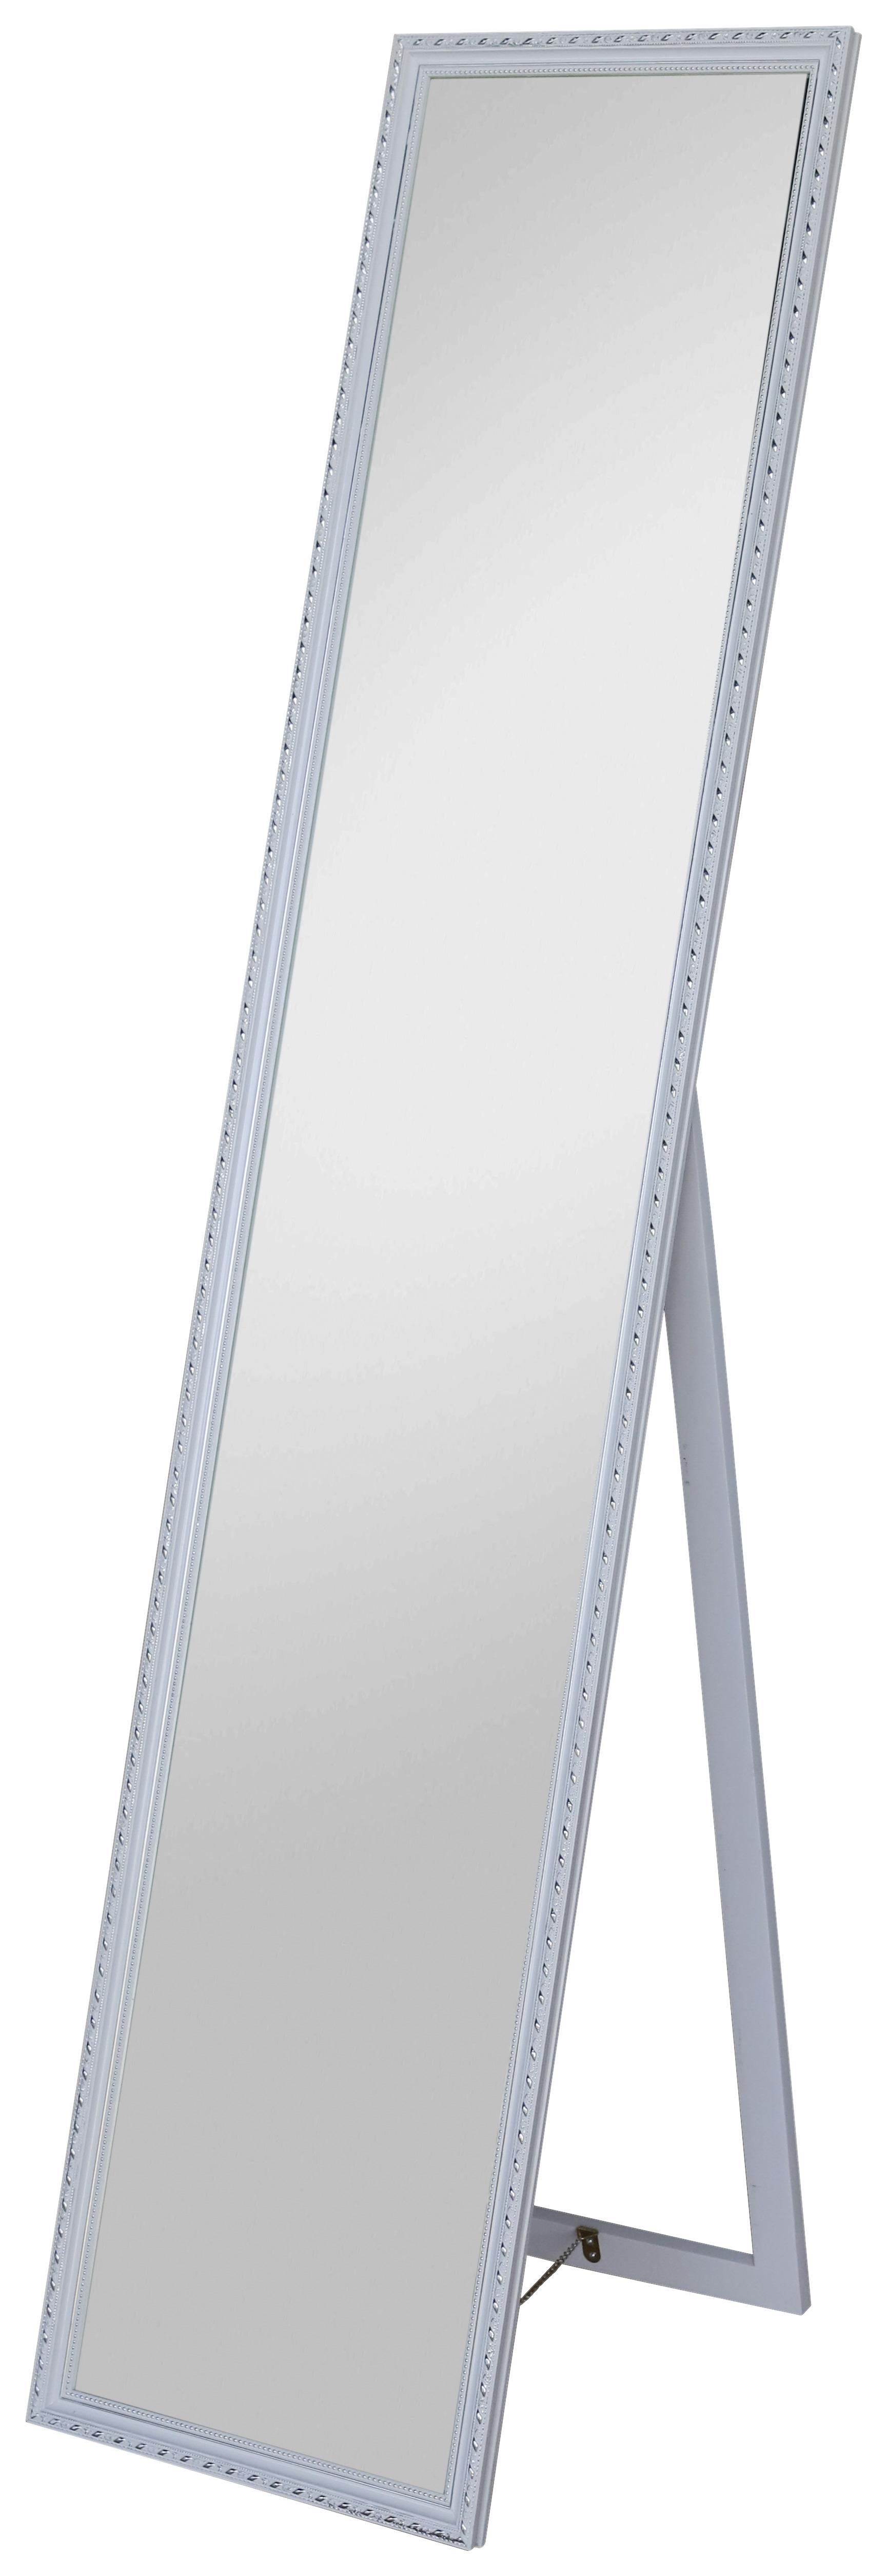 Standspiegel Pisa BxH: 34x160 cm mit Holzrahmen Weiß - Silberfarben/Weiß, MODERN, Glas/Holz (34/160/2,3cm)